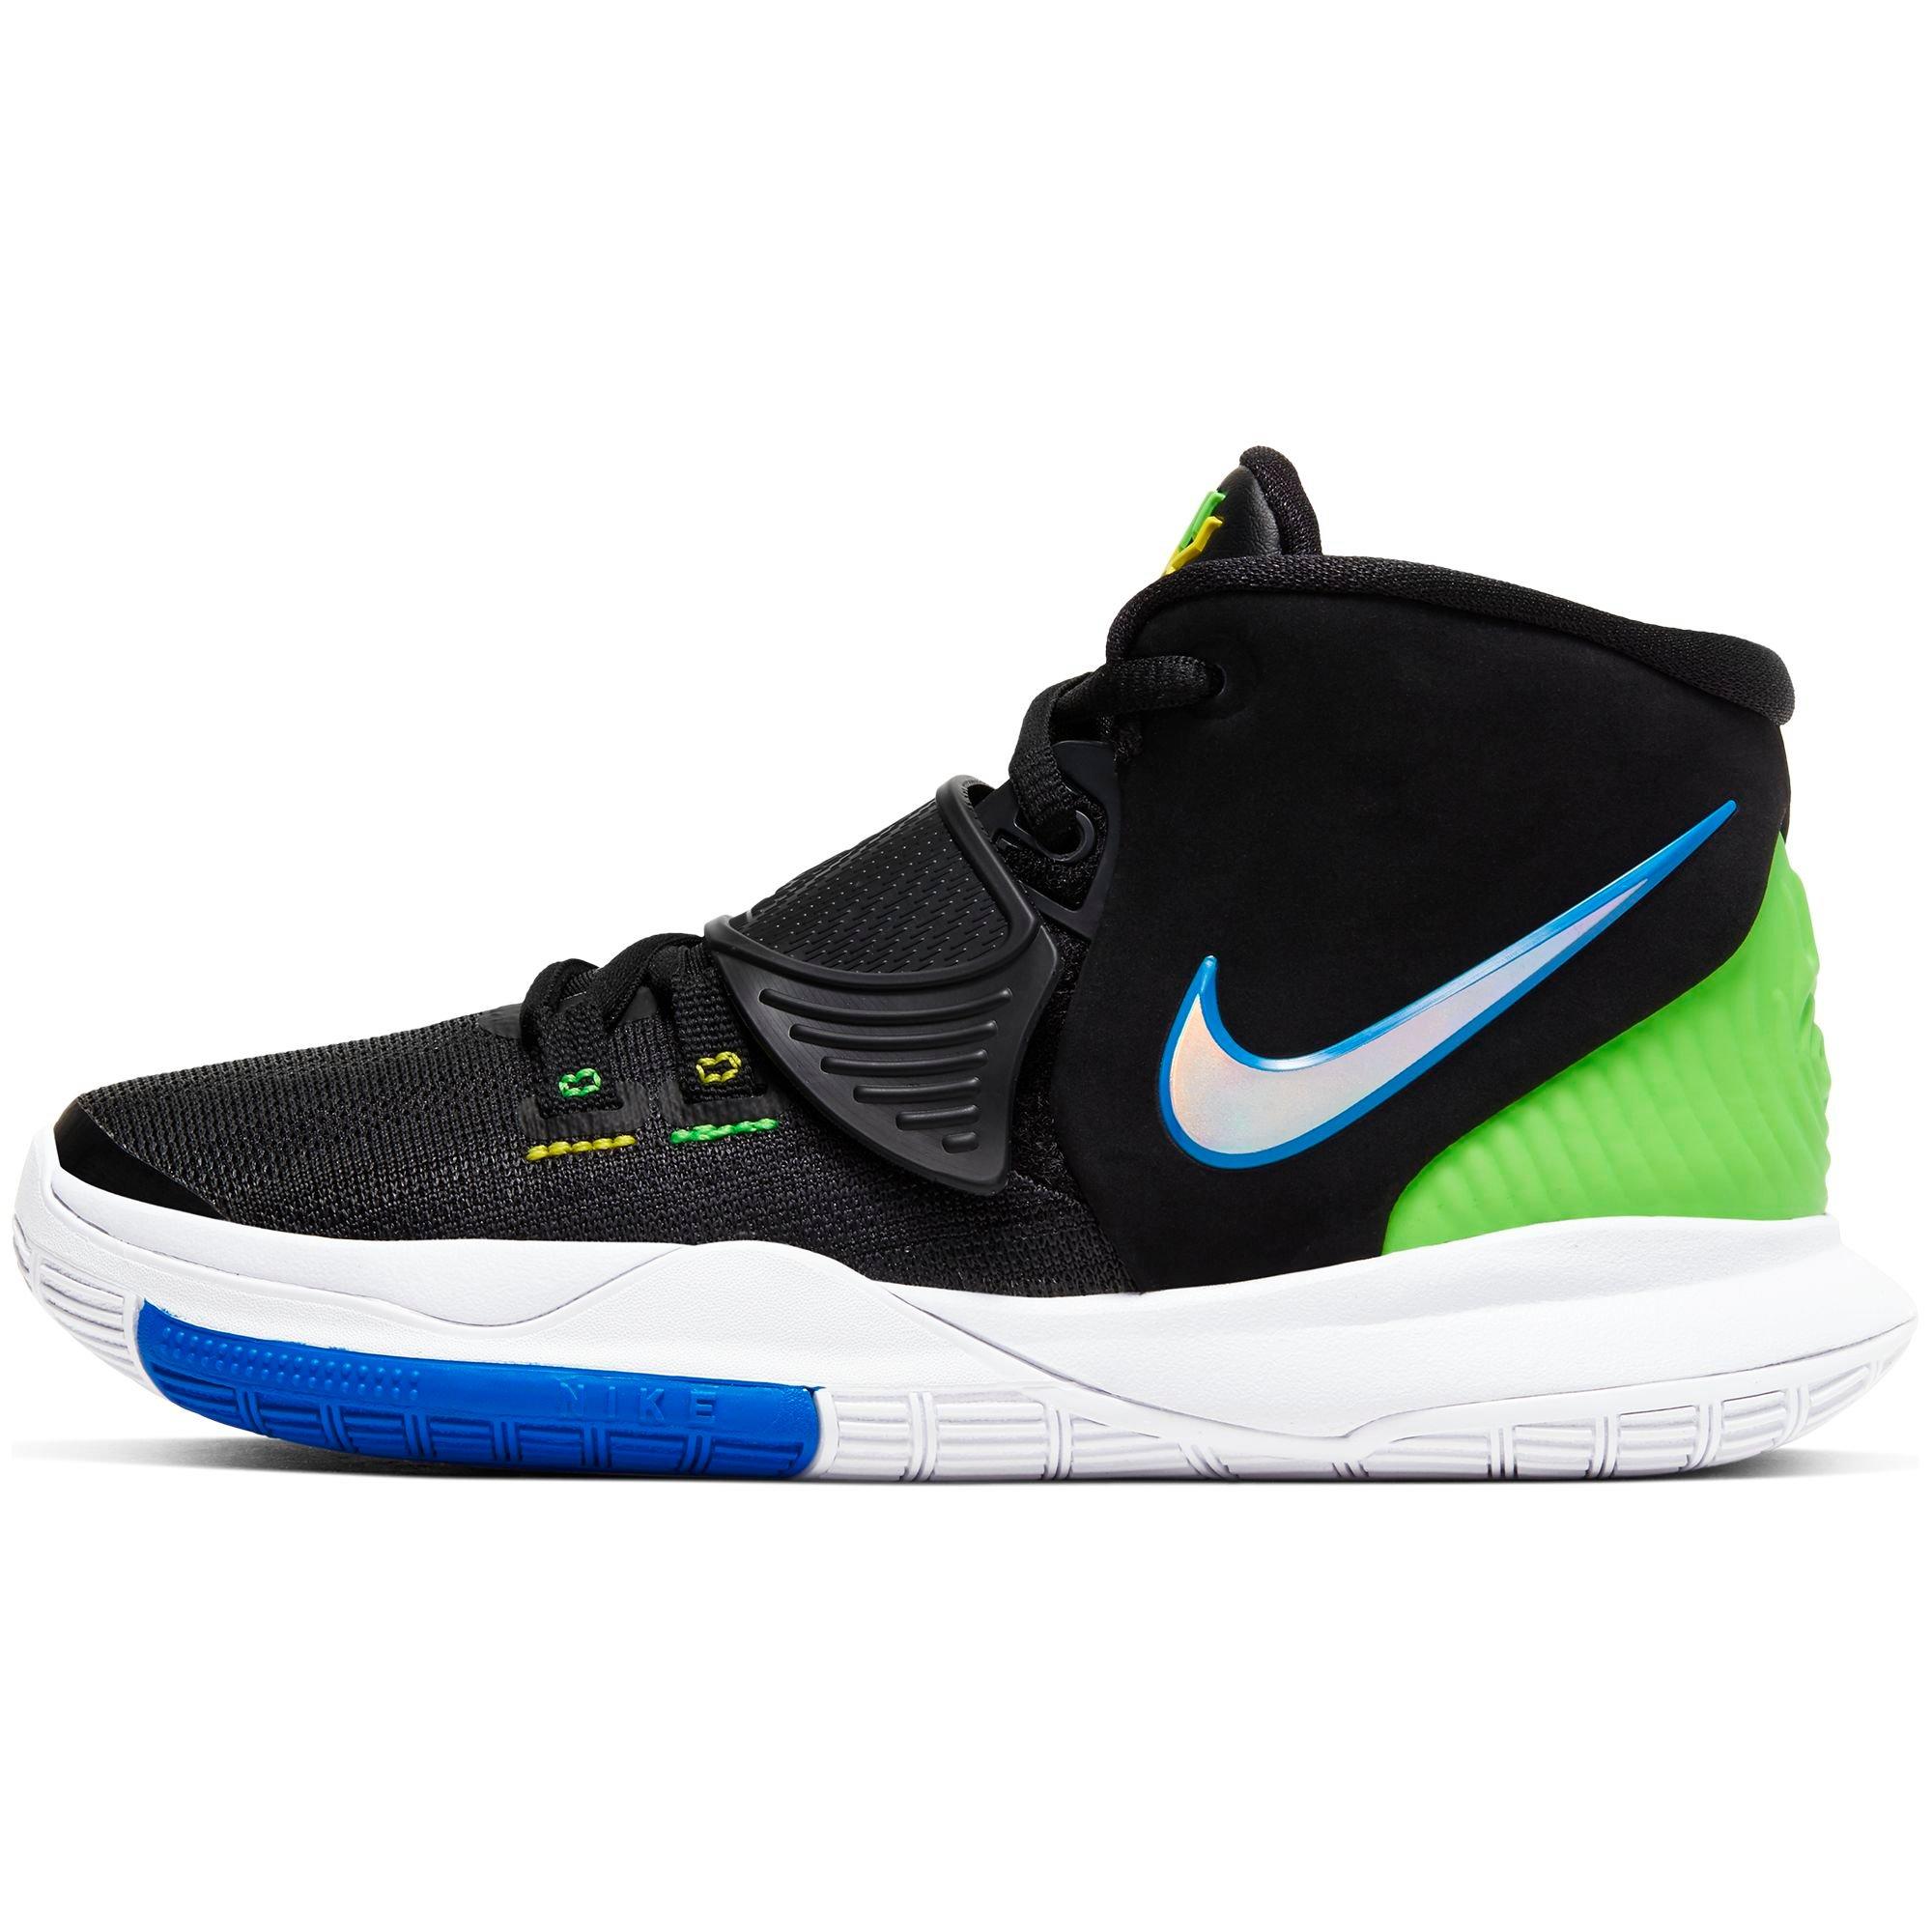 Sneakers Release – Nike Kyrie 6 Black 